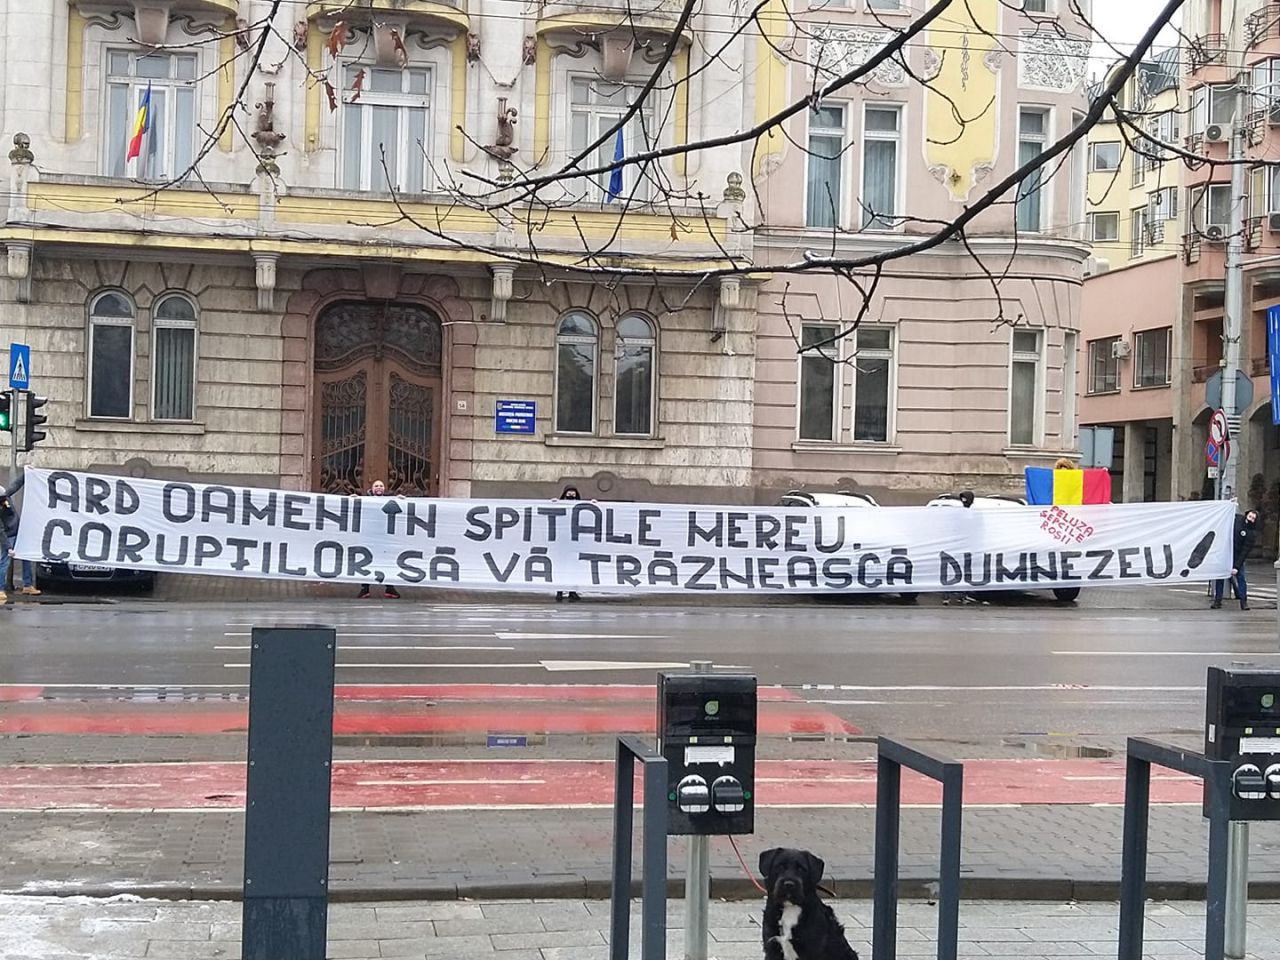 Suporterii „U” Cluj protestează în fața Prefecturii, după tragedia de la Spitalul Matei Balș: „Ard oamenii în spitale mereu”